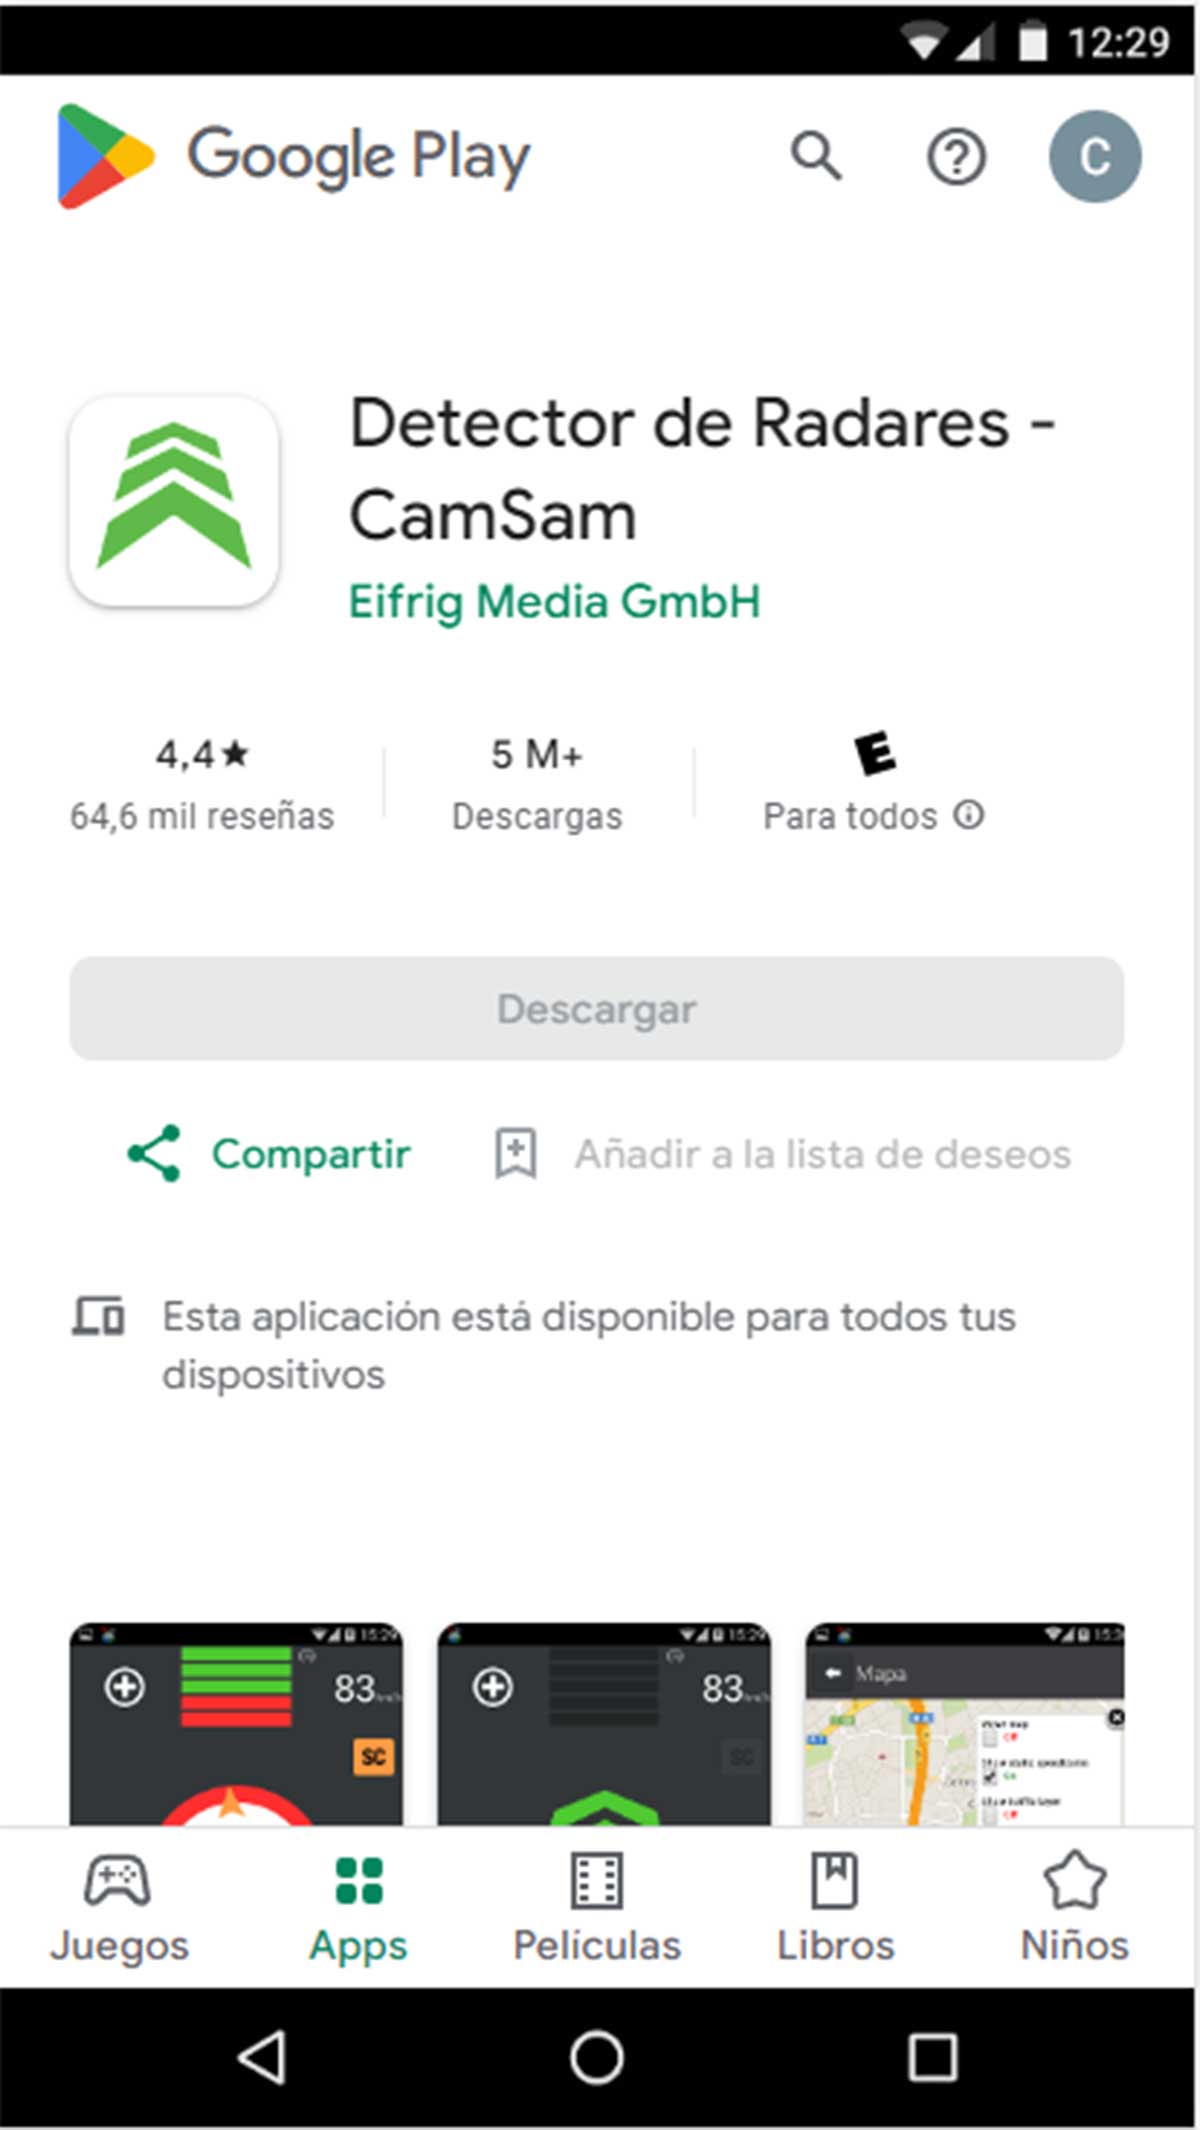 App de CamSam para detectar radares.